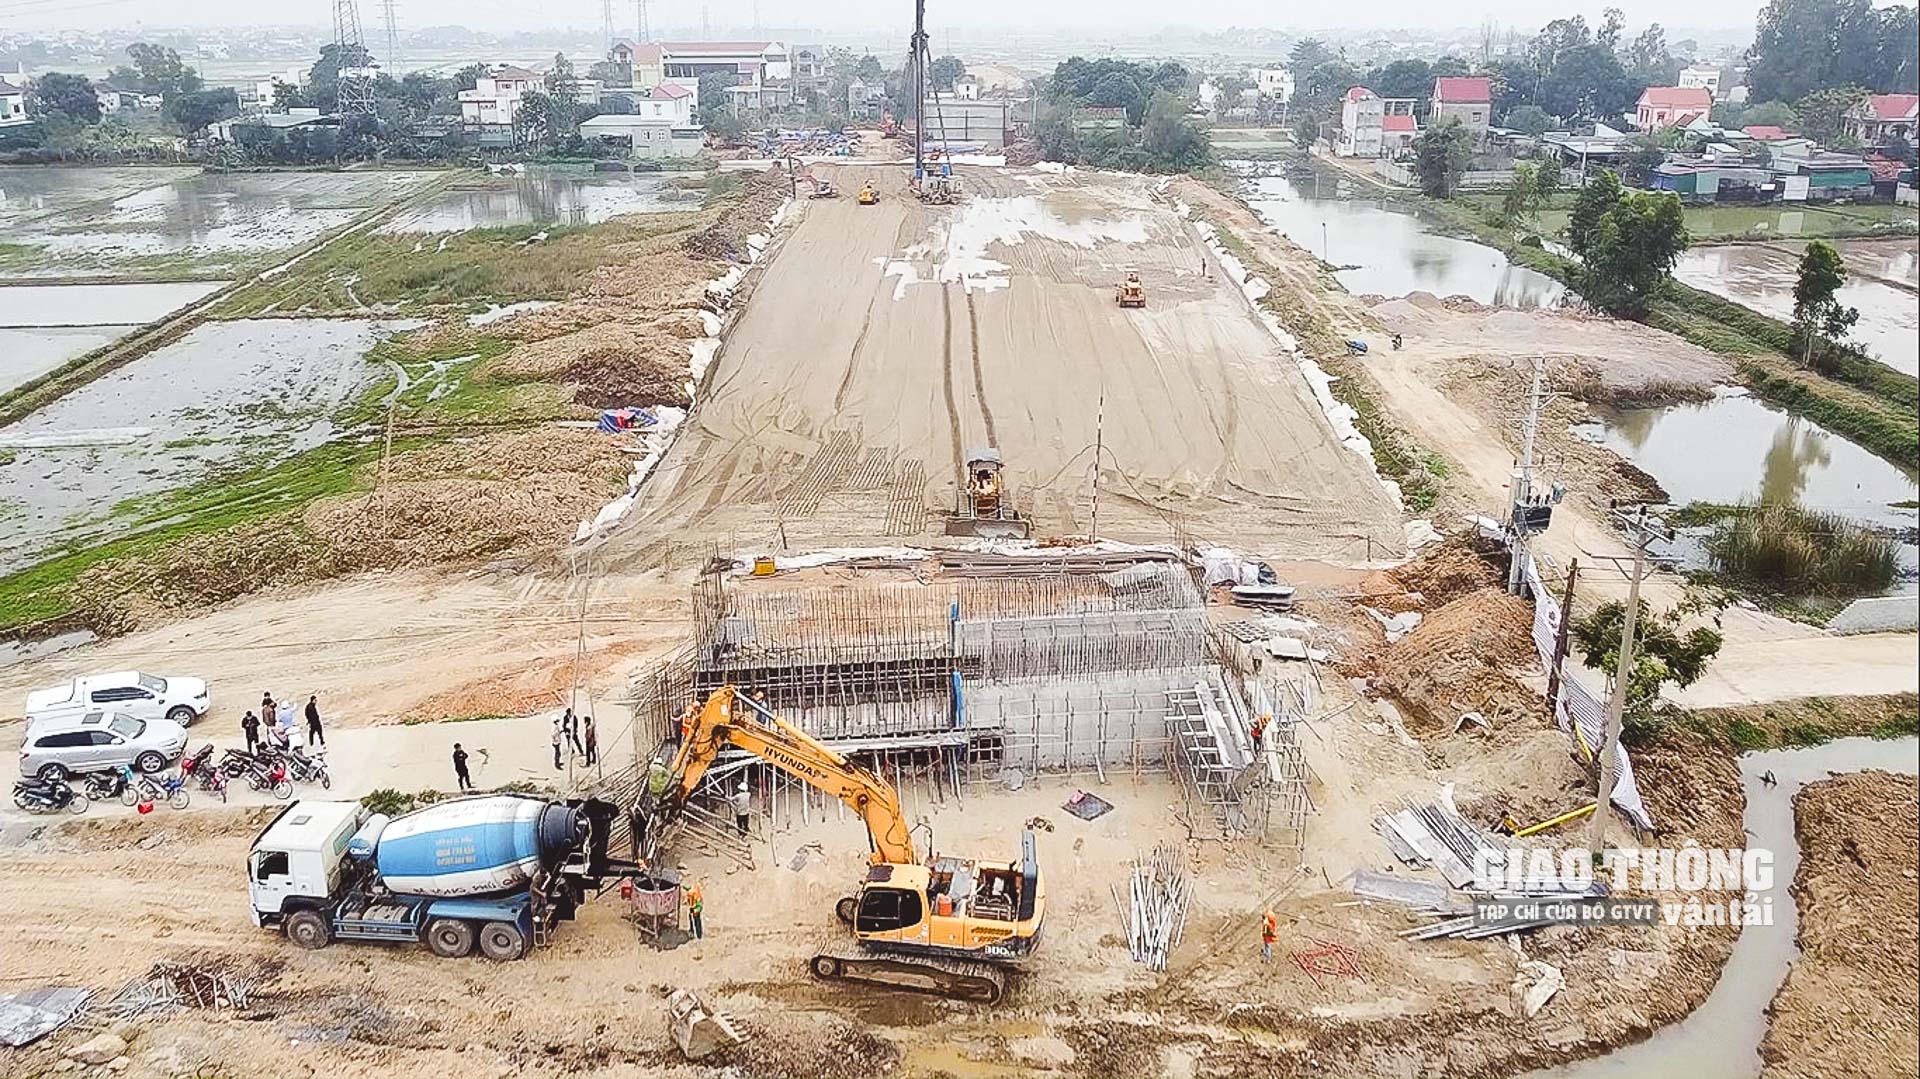 Đoạn Nghi Sơn – Diễn Châu từ Thanh Hóa đến Nghệ An khởi công ngày 02/7/2021, kế hoạch hoàn thành các gói thầu và dự án vào tháng 7/2023.